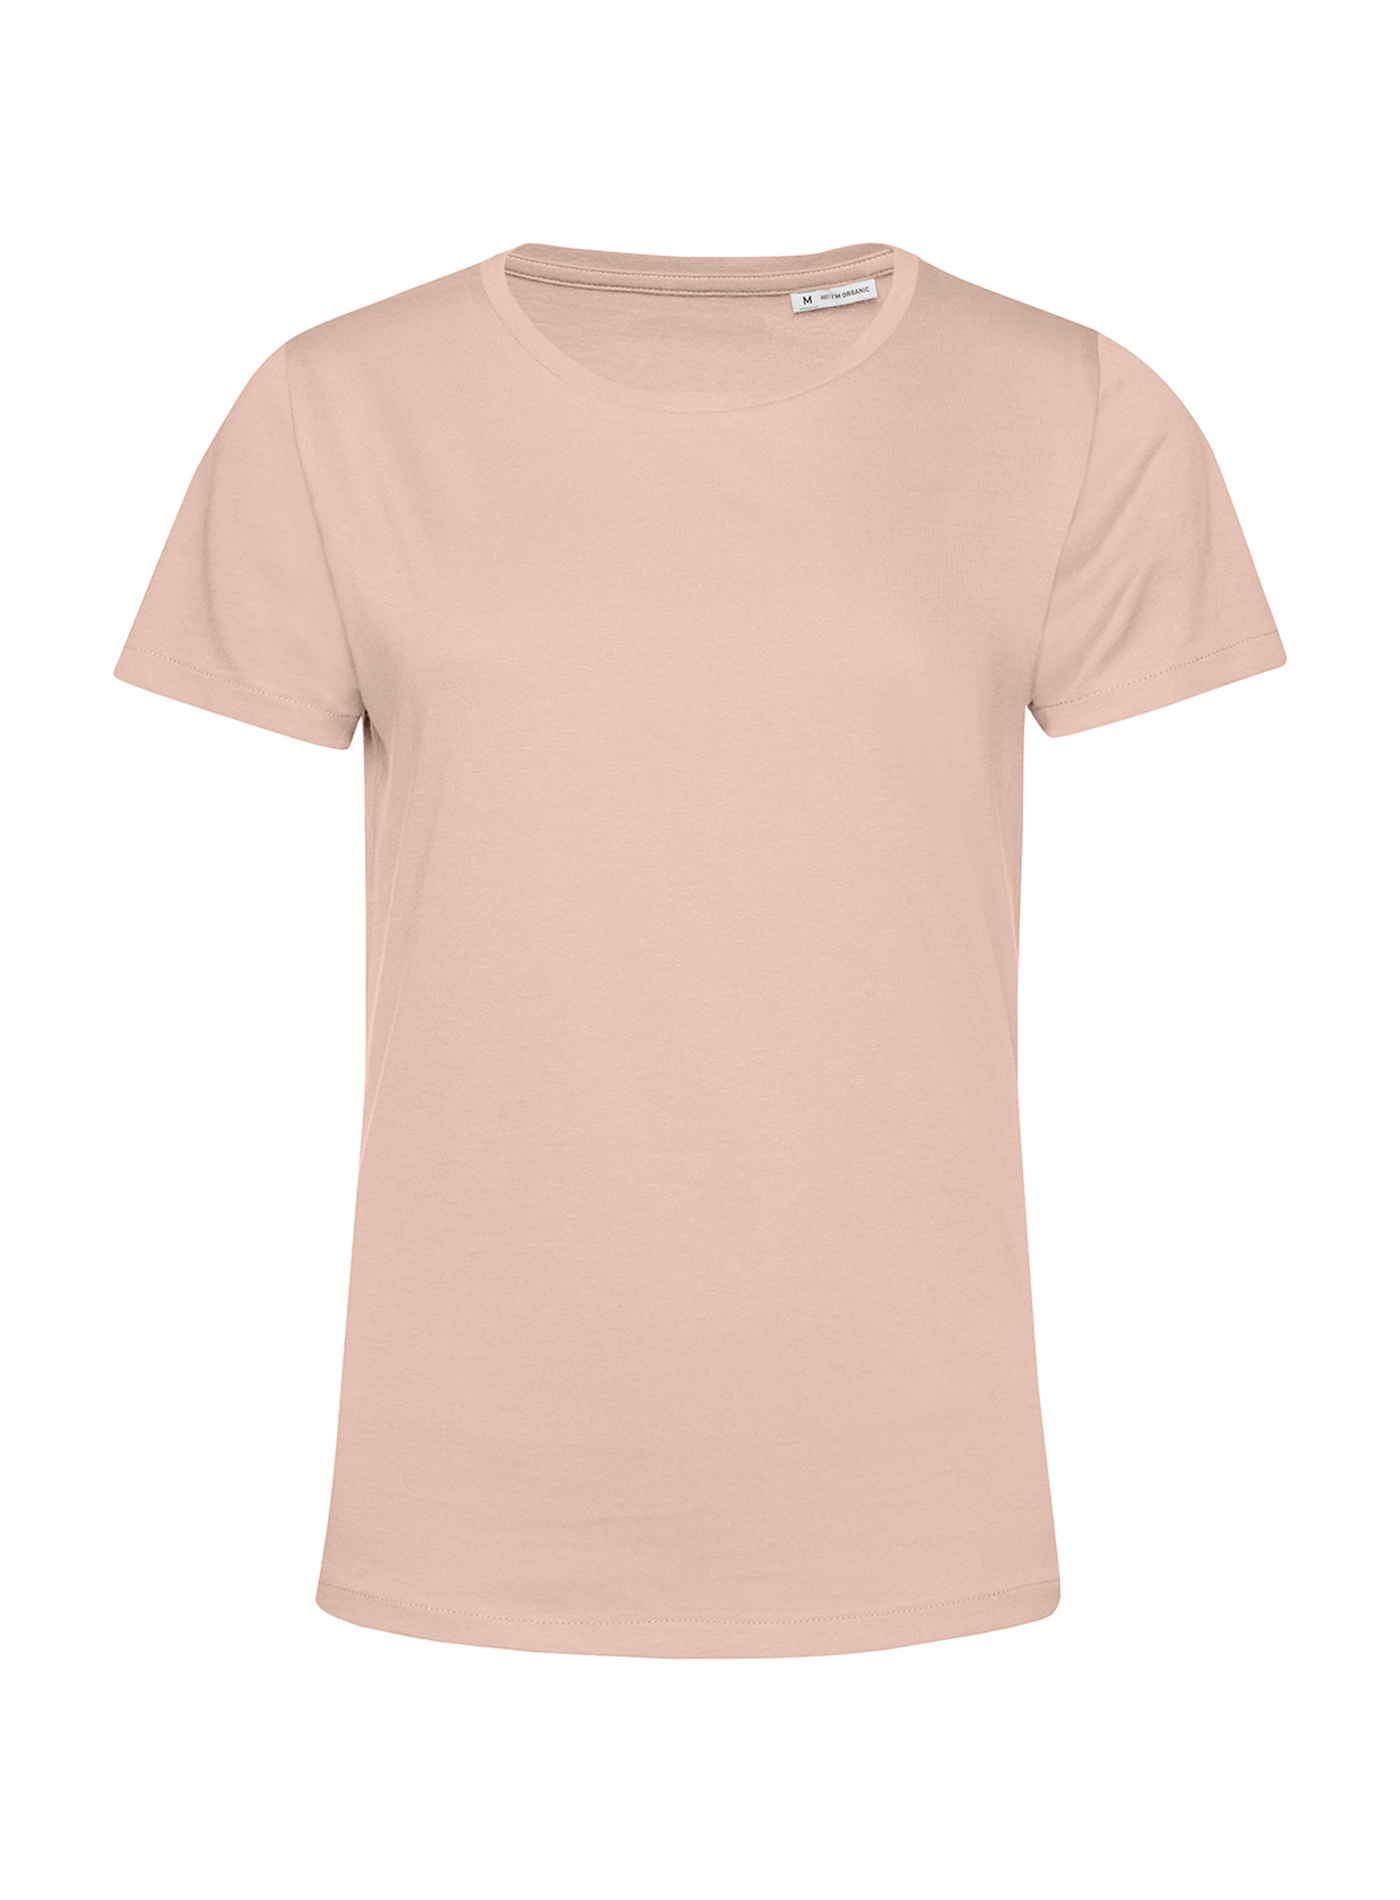 Dámské tričko B&C Collection Organic - Bledě růžová M